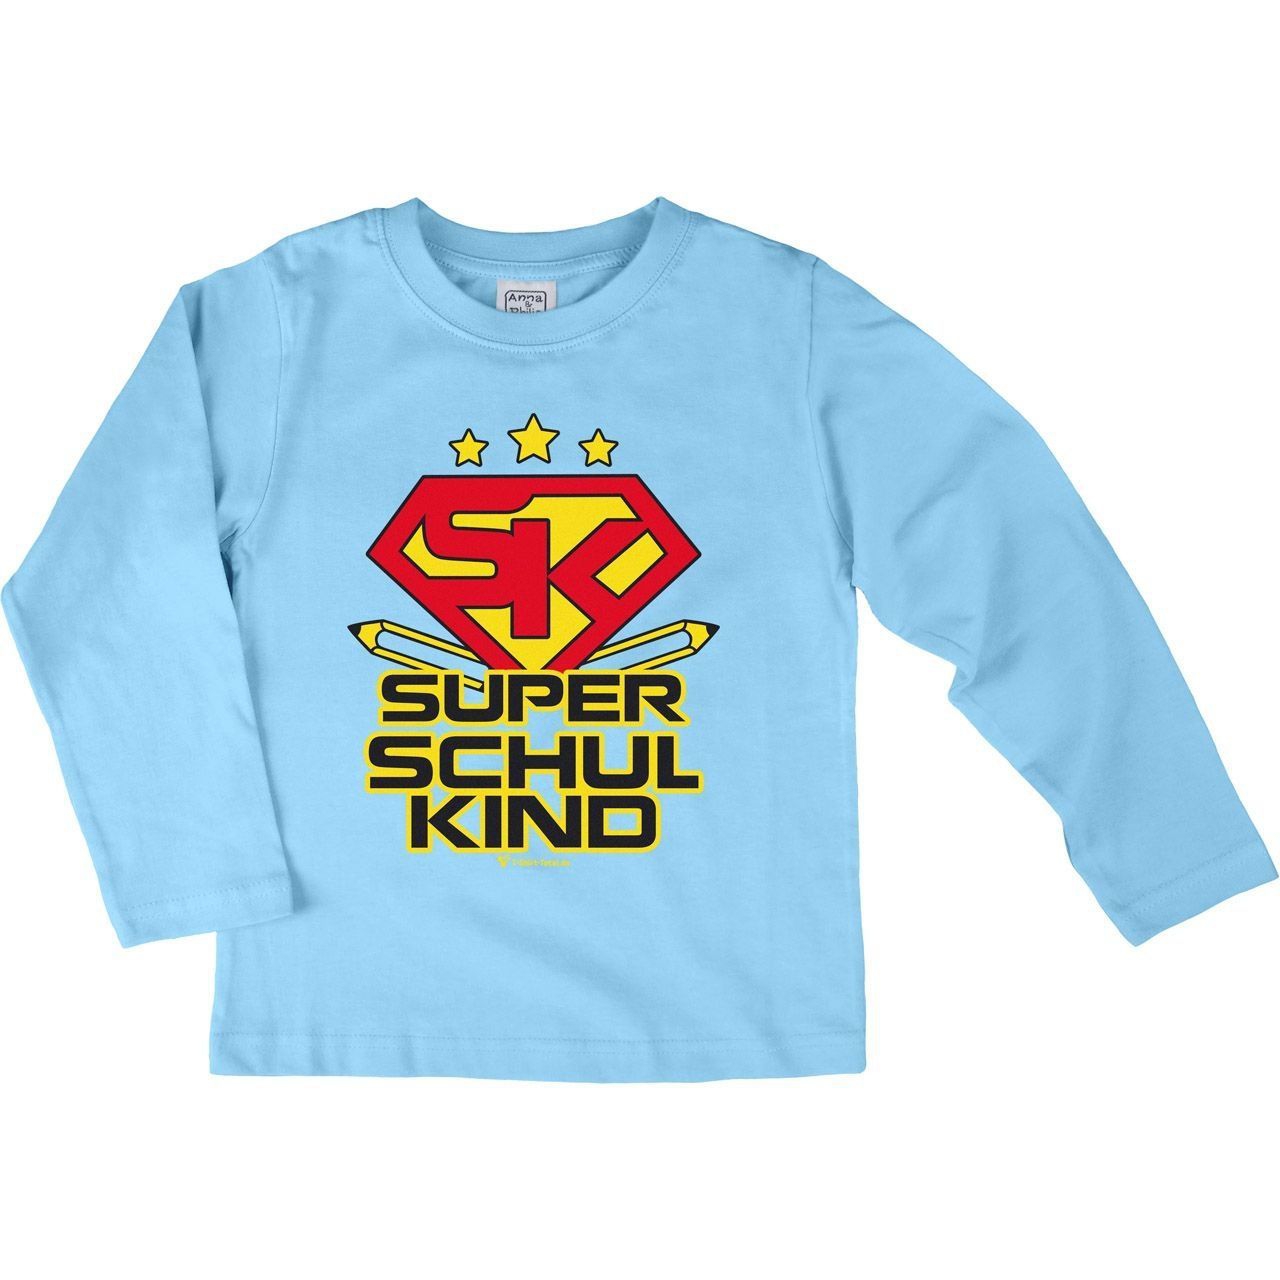 Super Schulkind Kinder Langarm Shirt hellblau 134 / 140